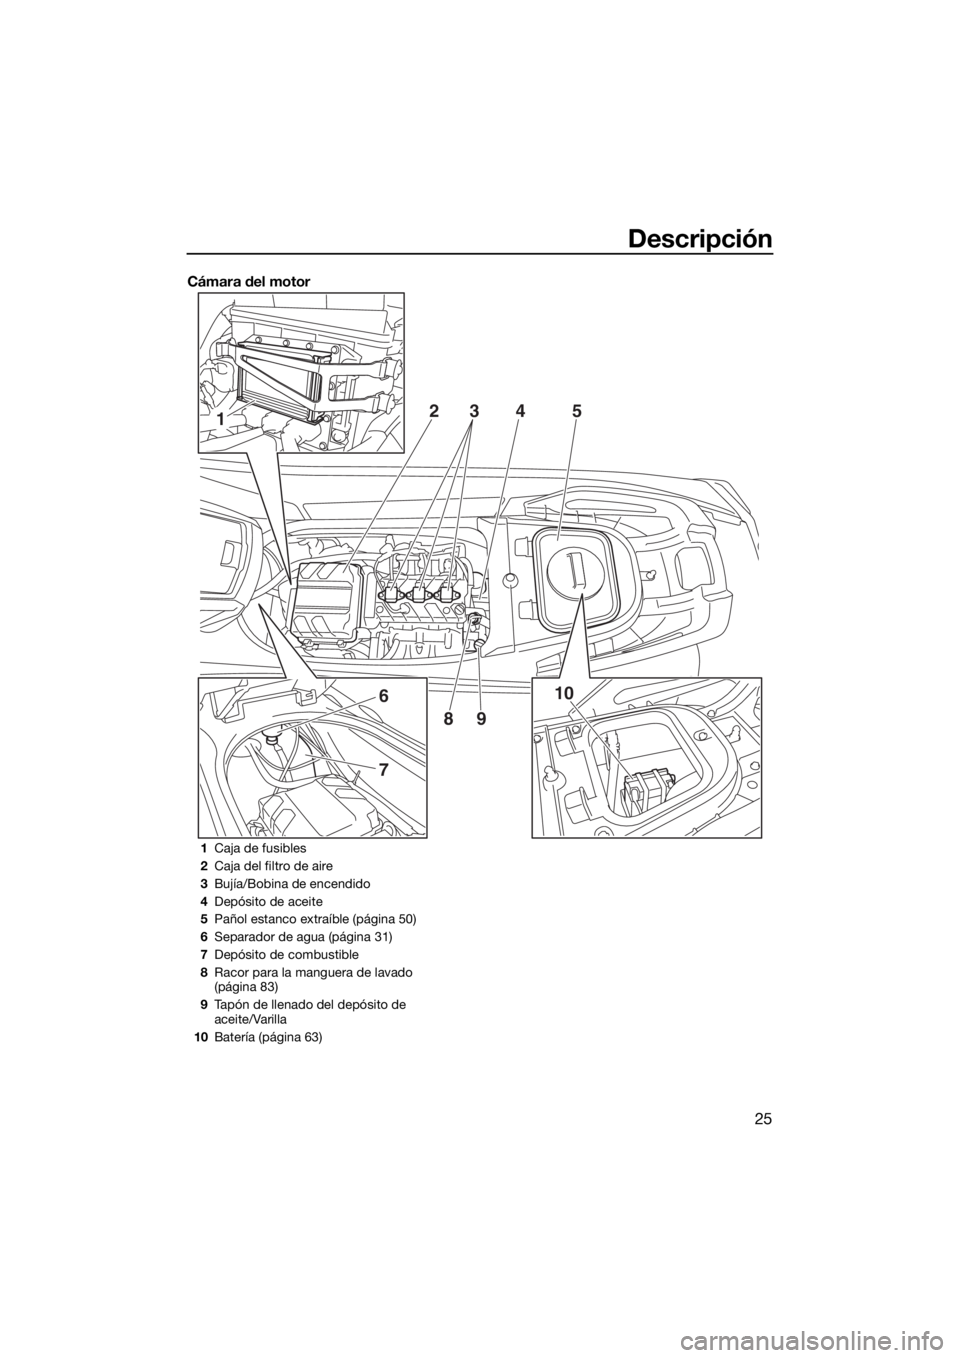 YAMAHA VX 2019  Manuale de Empleo (in Spanish) Descripción
25
Cámara del motor
1
6
7
10 2
345
89
1Caja de fusibles
2Caja del filtro de aire
3Bujía/Bobina de encendido
4Depósito de aceite
5Pañol estanco extraíble (página 50)
6Separador de ag